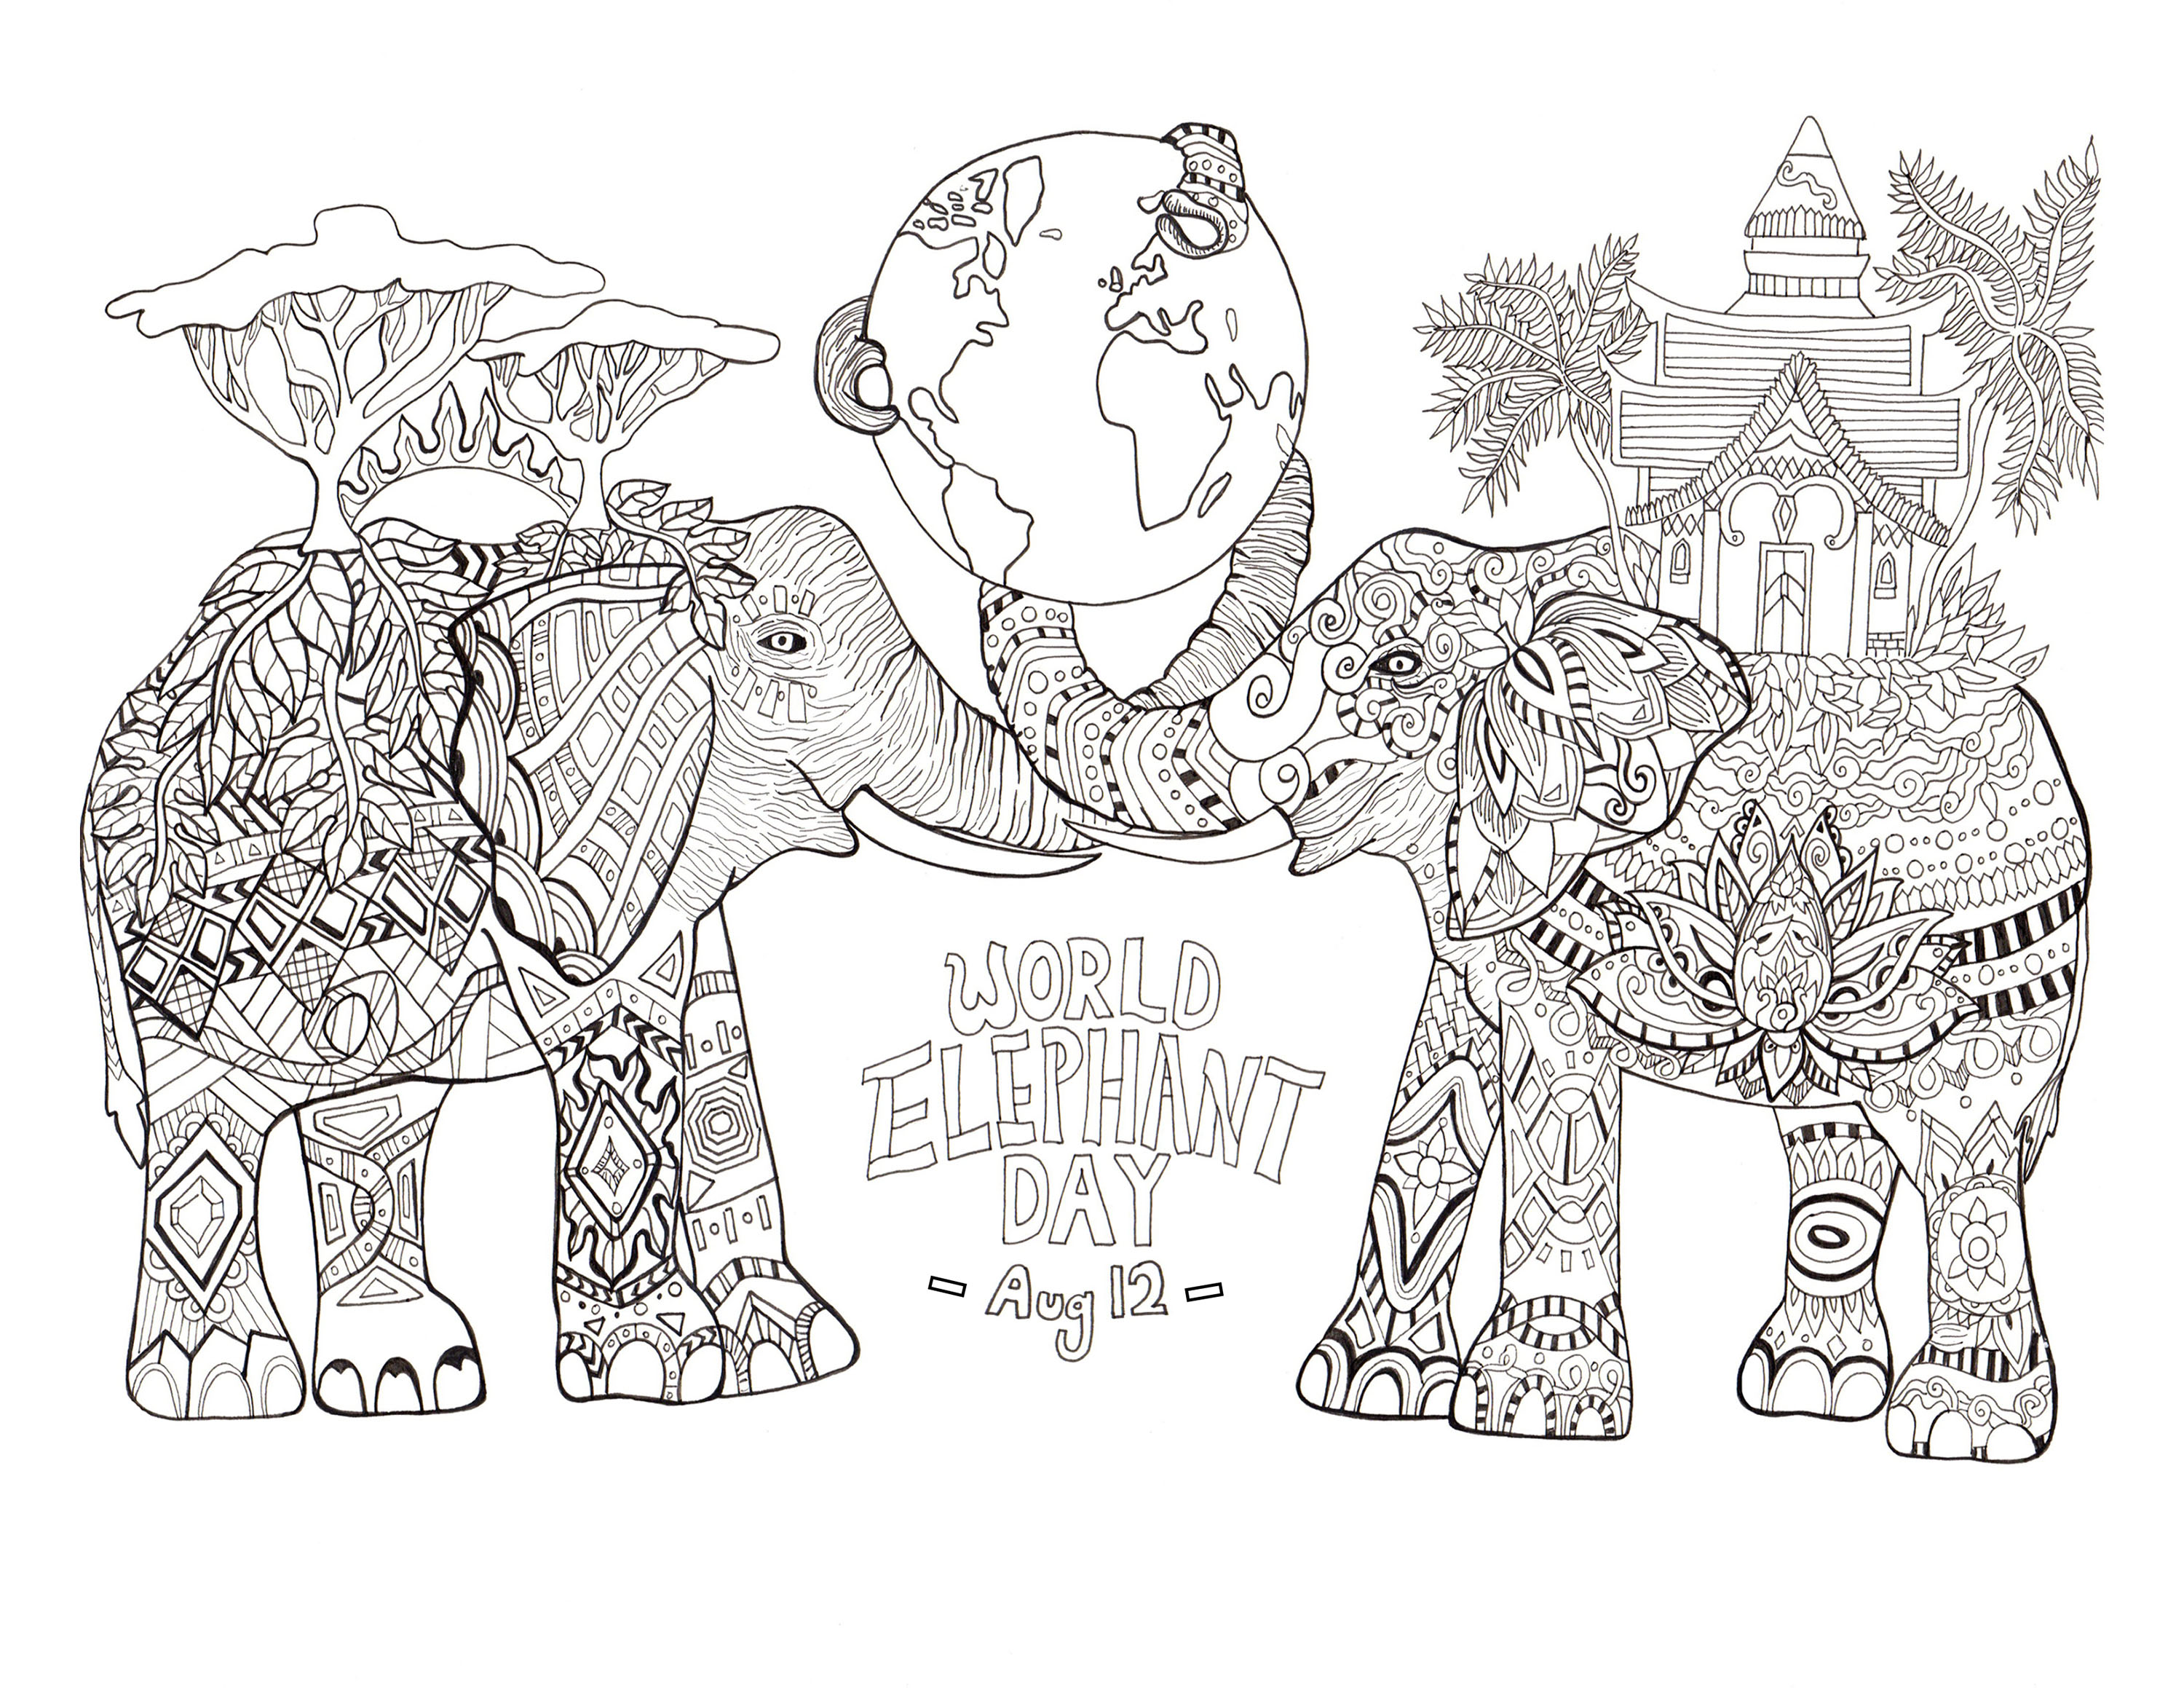 Dia Mundial do Elefante. Colorir para o Dia Mundial do Elefante (12 de agosto)